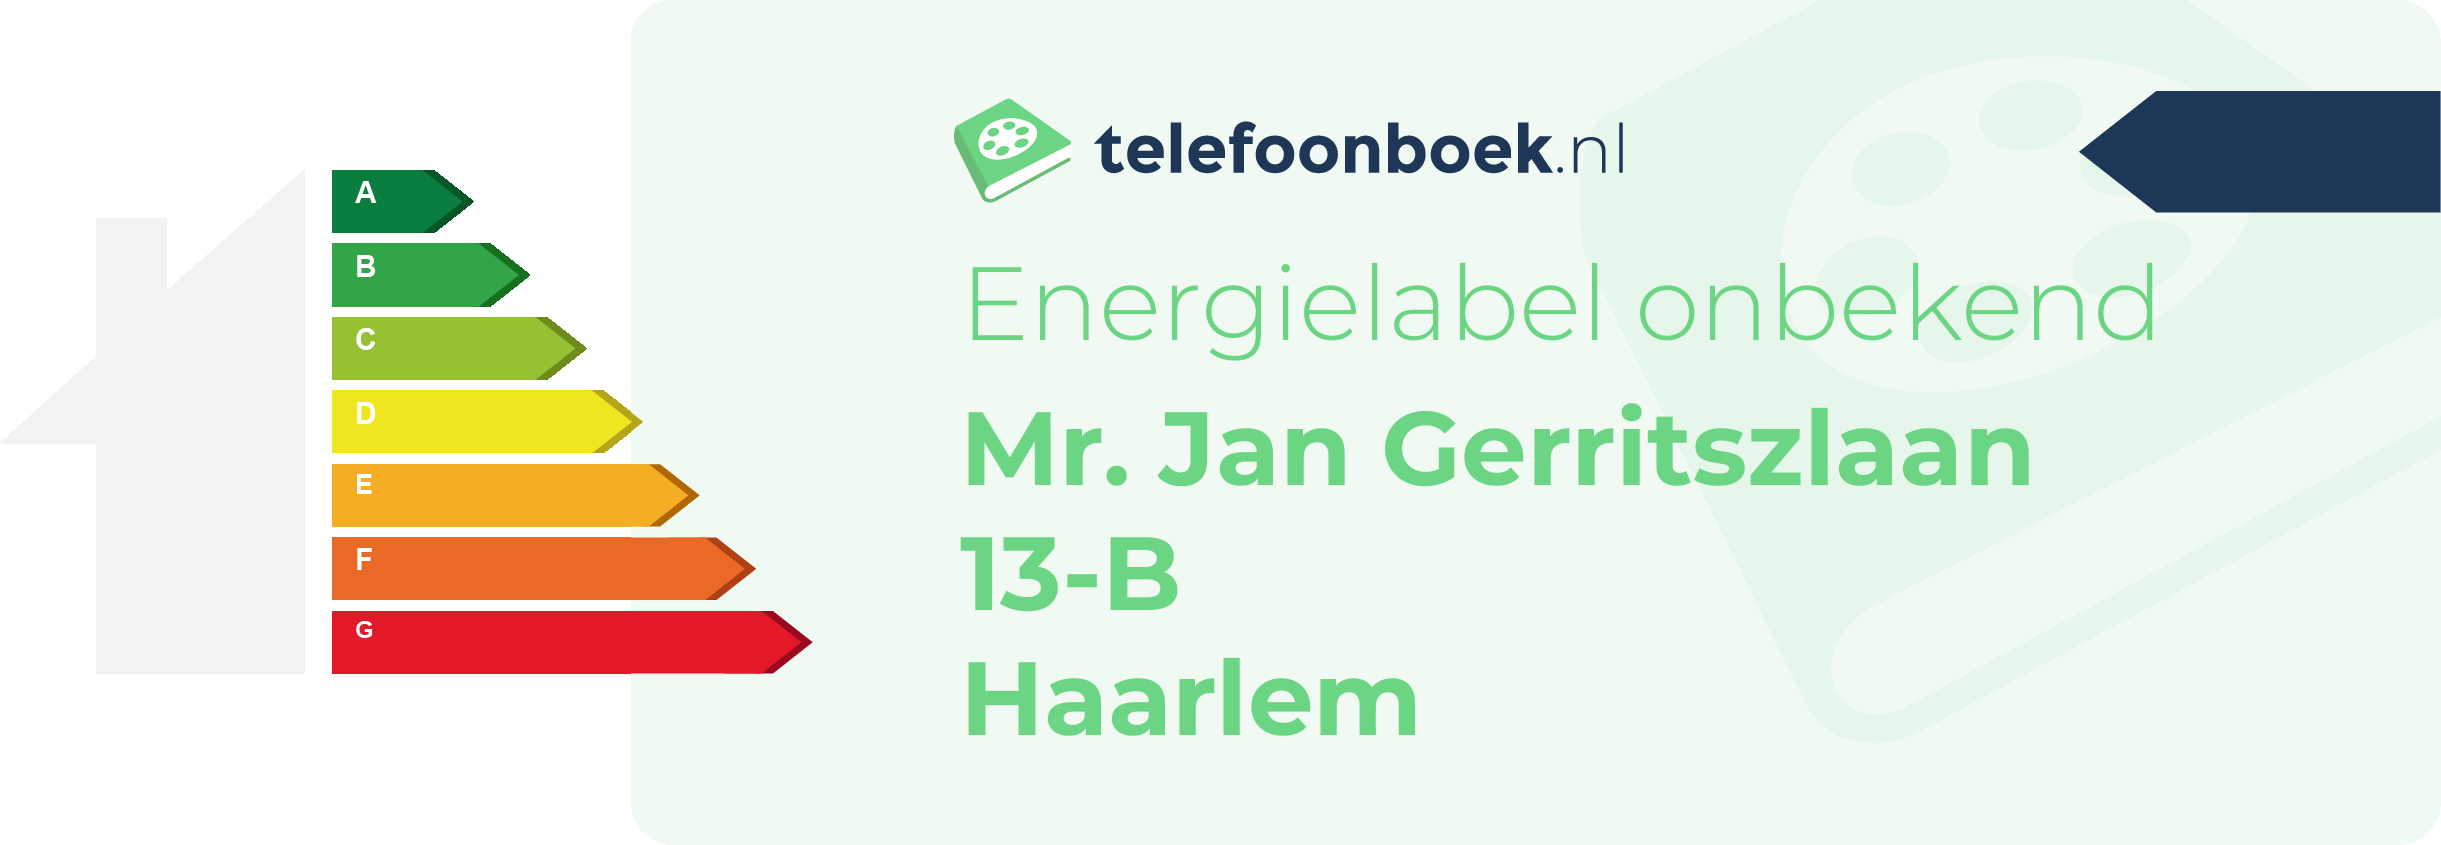 Energielabel Mr. Jan Gerritszlaan 13-B Haarlem